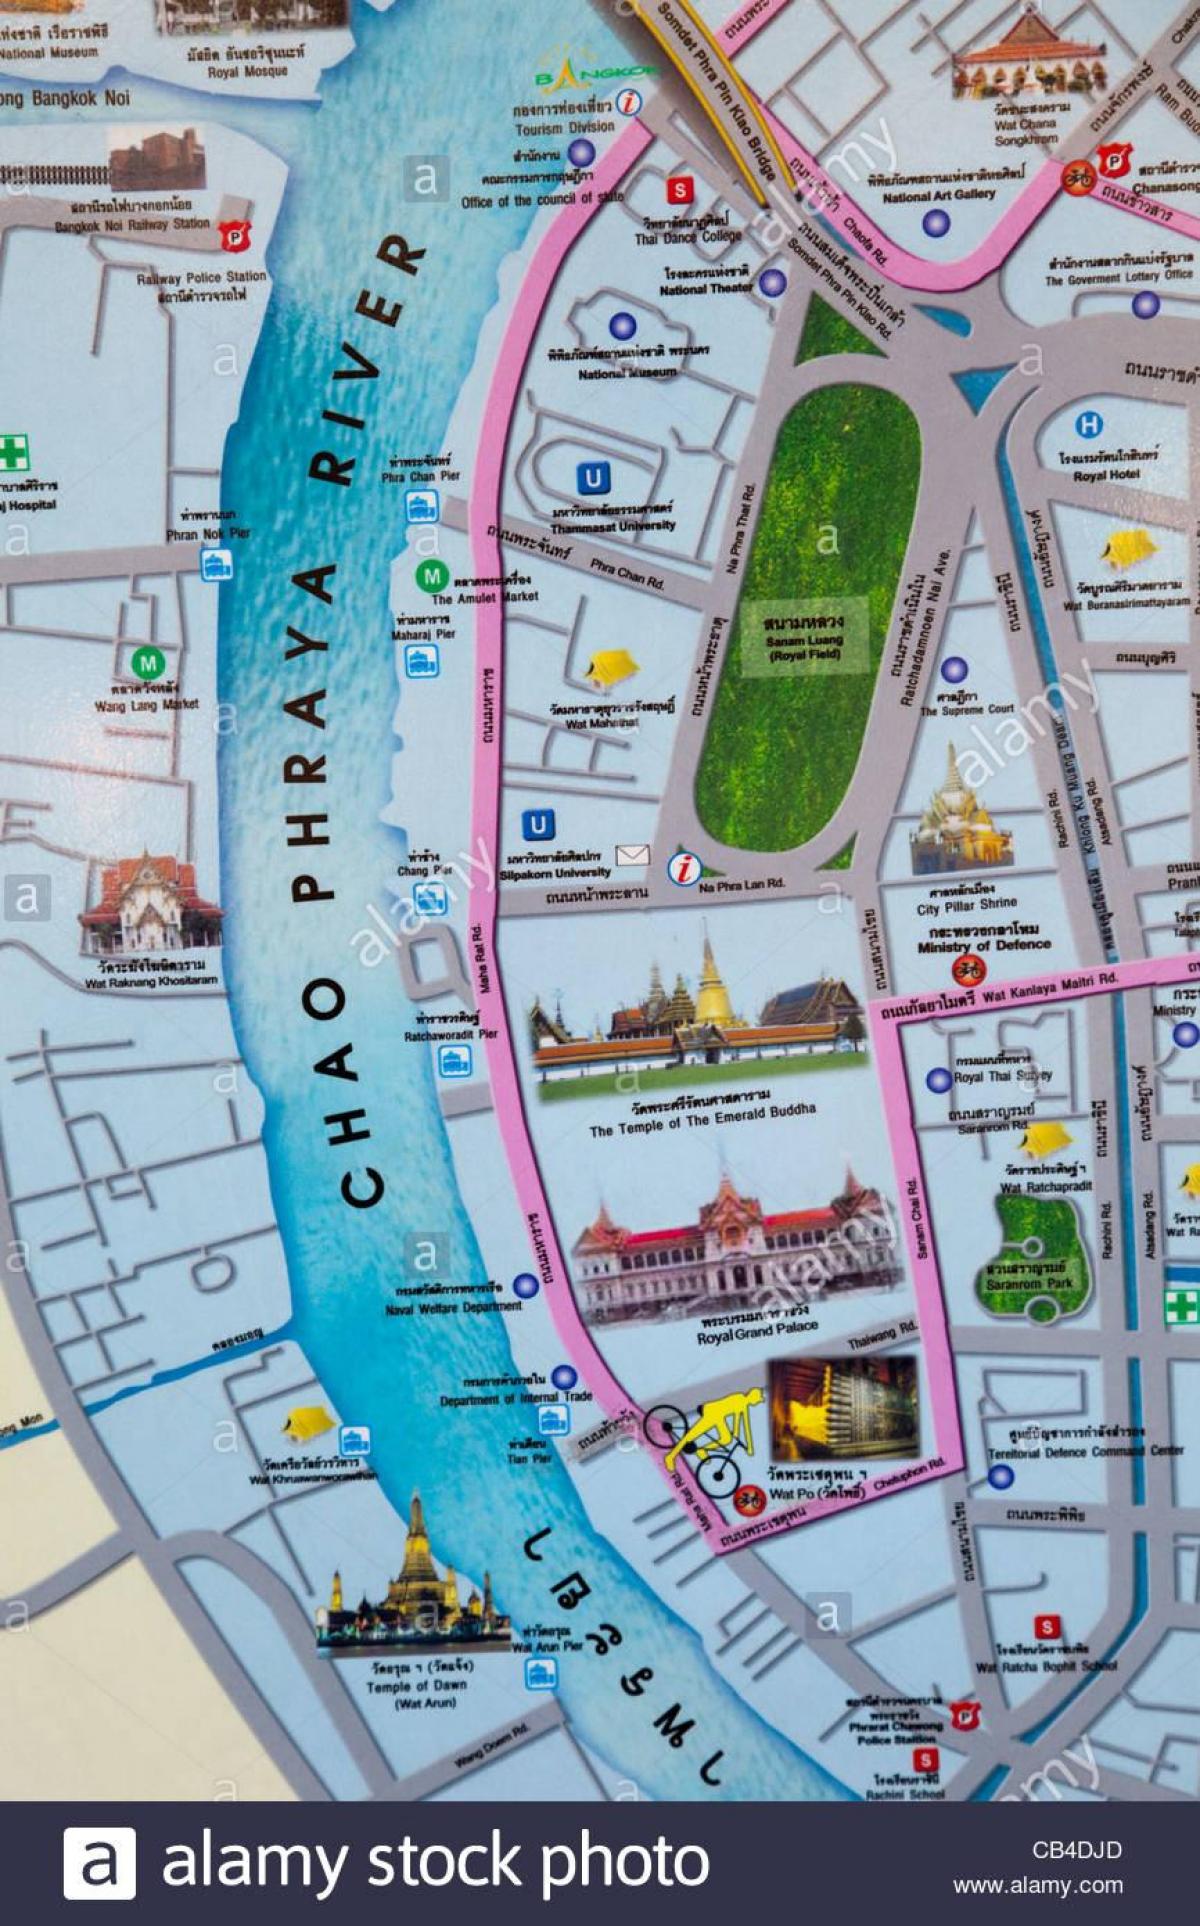 bangkok mapa na may mga tourist spot